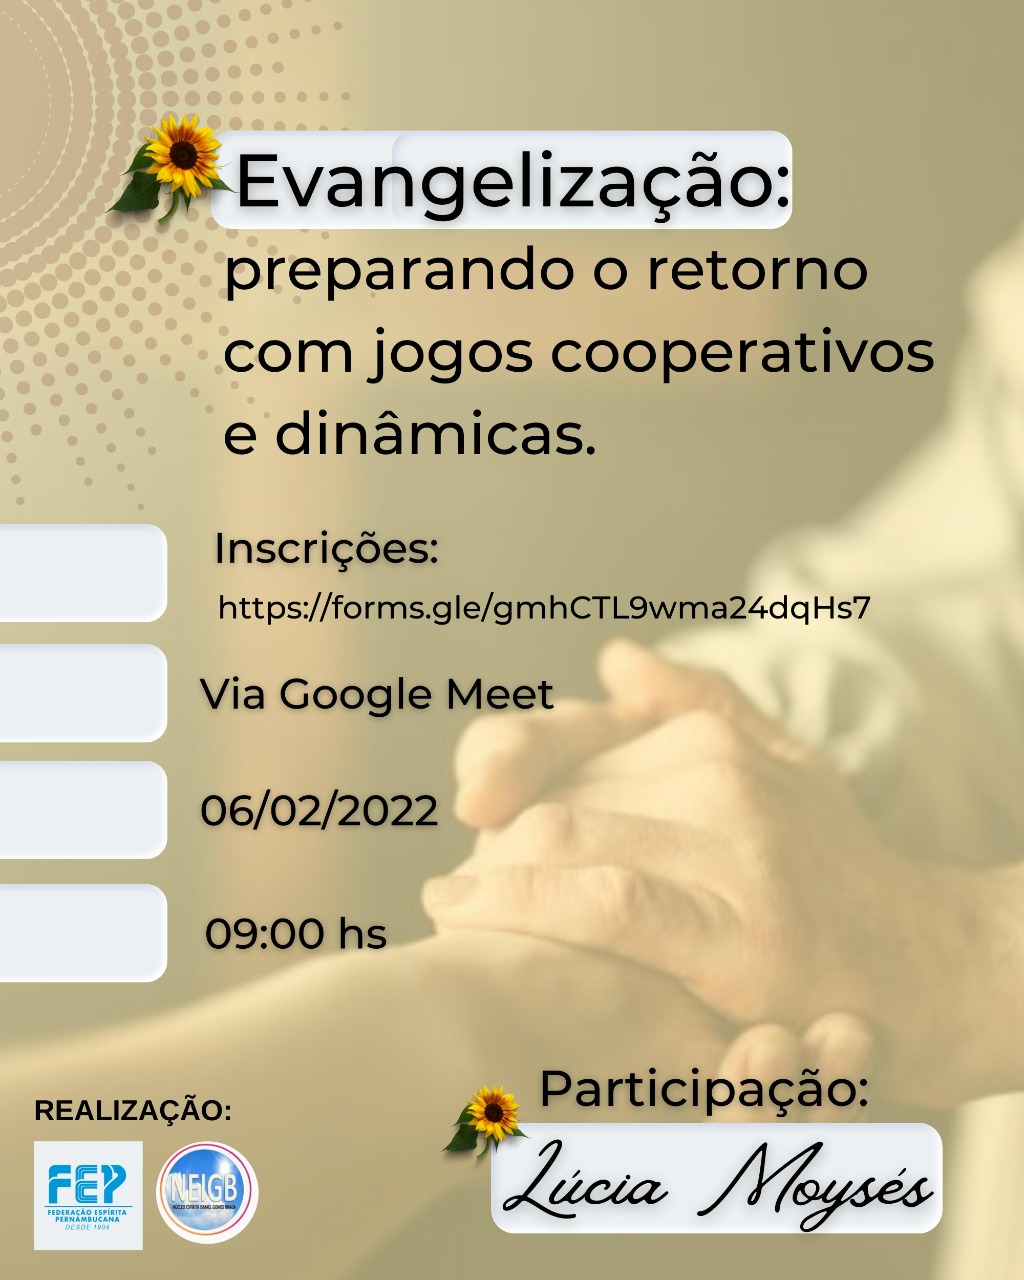 Oficina com Lúcia Moysés “Evangelização: preparando o retorno com